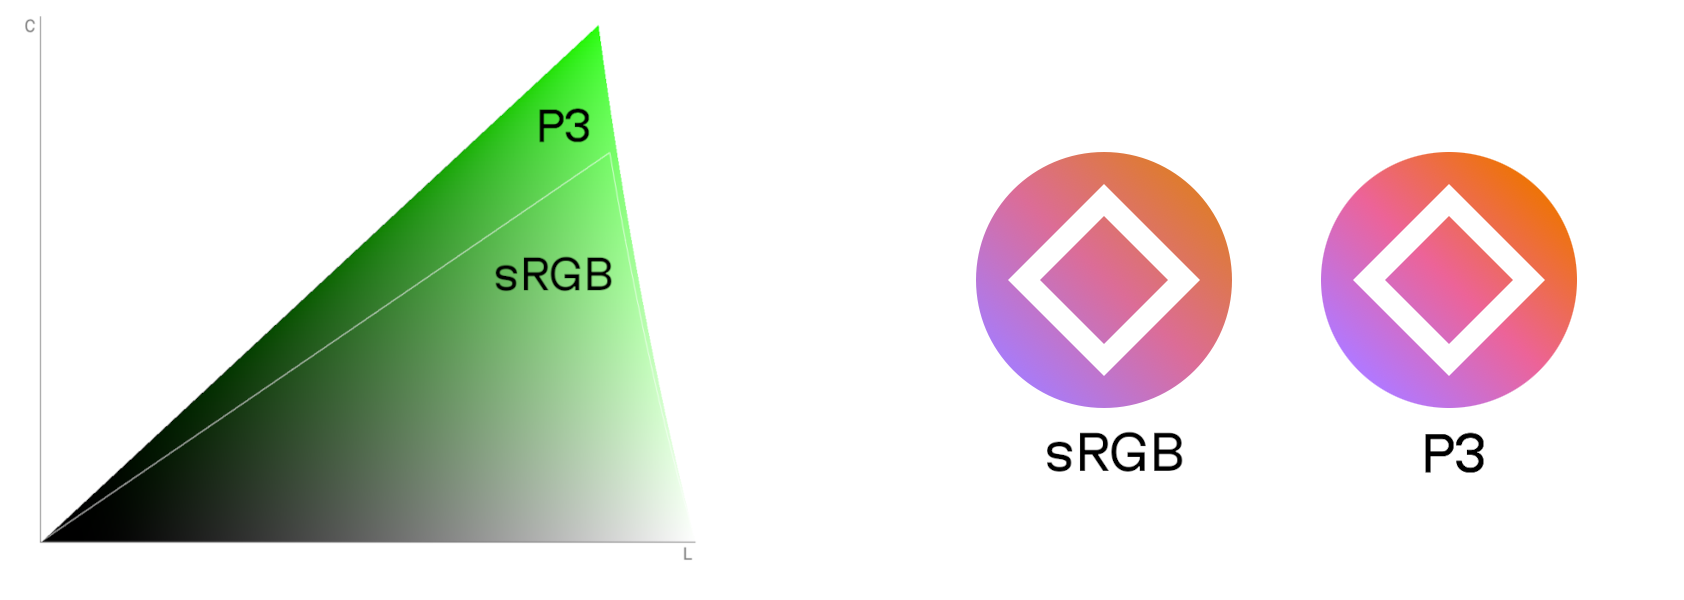 Слева: расширяющийся клин, который показывает как P3-цвета расширяют цветовое многообразие по сравнению с sRGB-пространством. Справа: два иконки, левая в sRGB-цветах, а правая в P3-цветах, гораздо ярче.